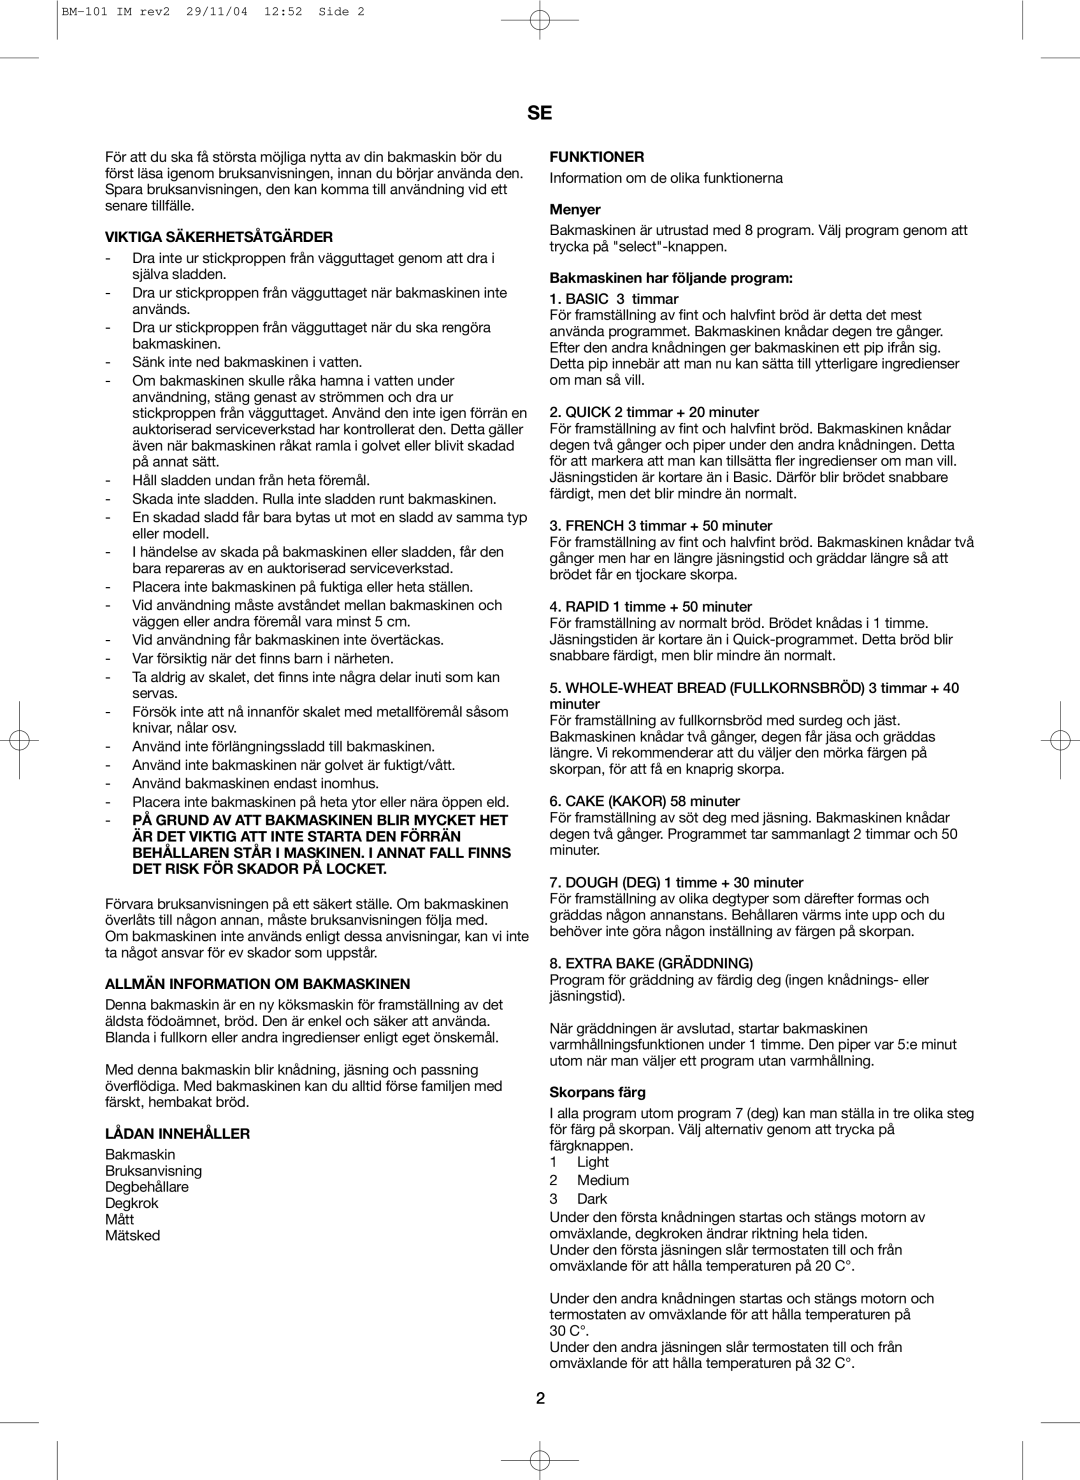 Melissa 643-042 manual Viktiga Säkerhetsåtgärder, Allmän Information Om Bakmaskinen, Lådan Innehåller, Funktioner, Menyer 